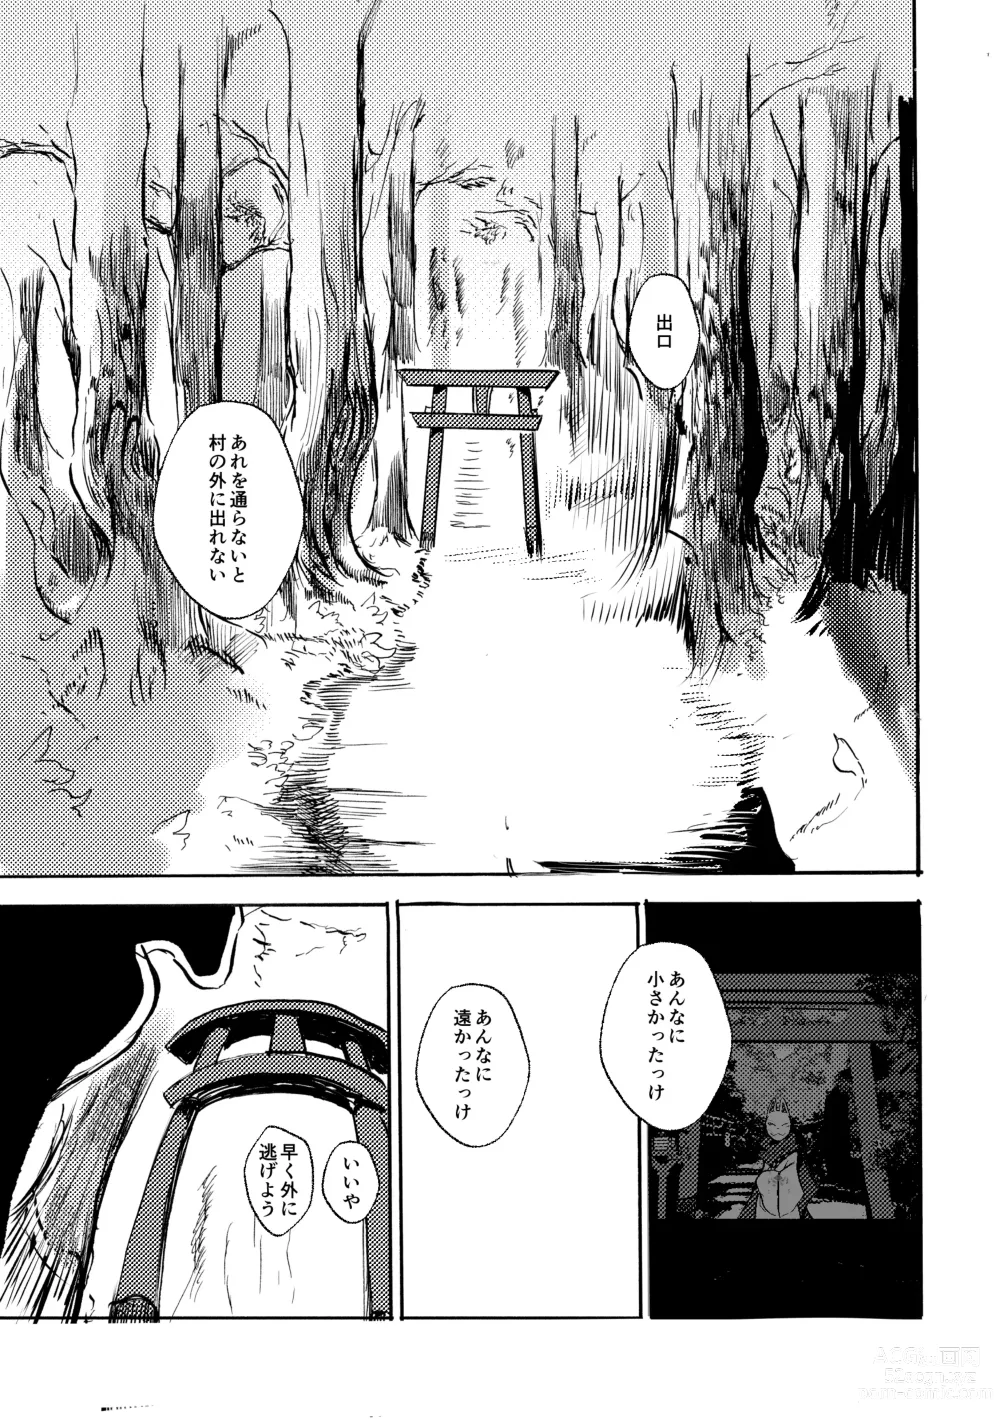 Page 30 of doujinshi Ato no Matsuri